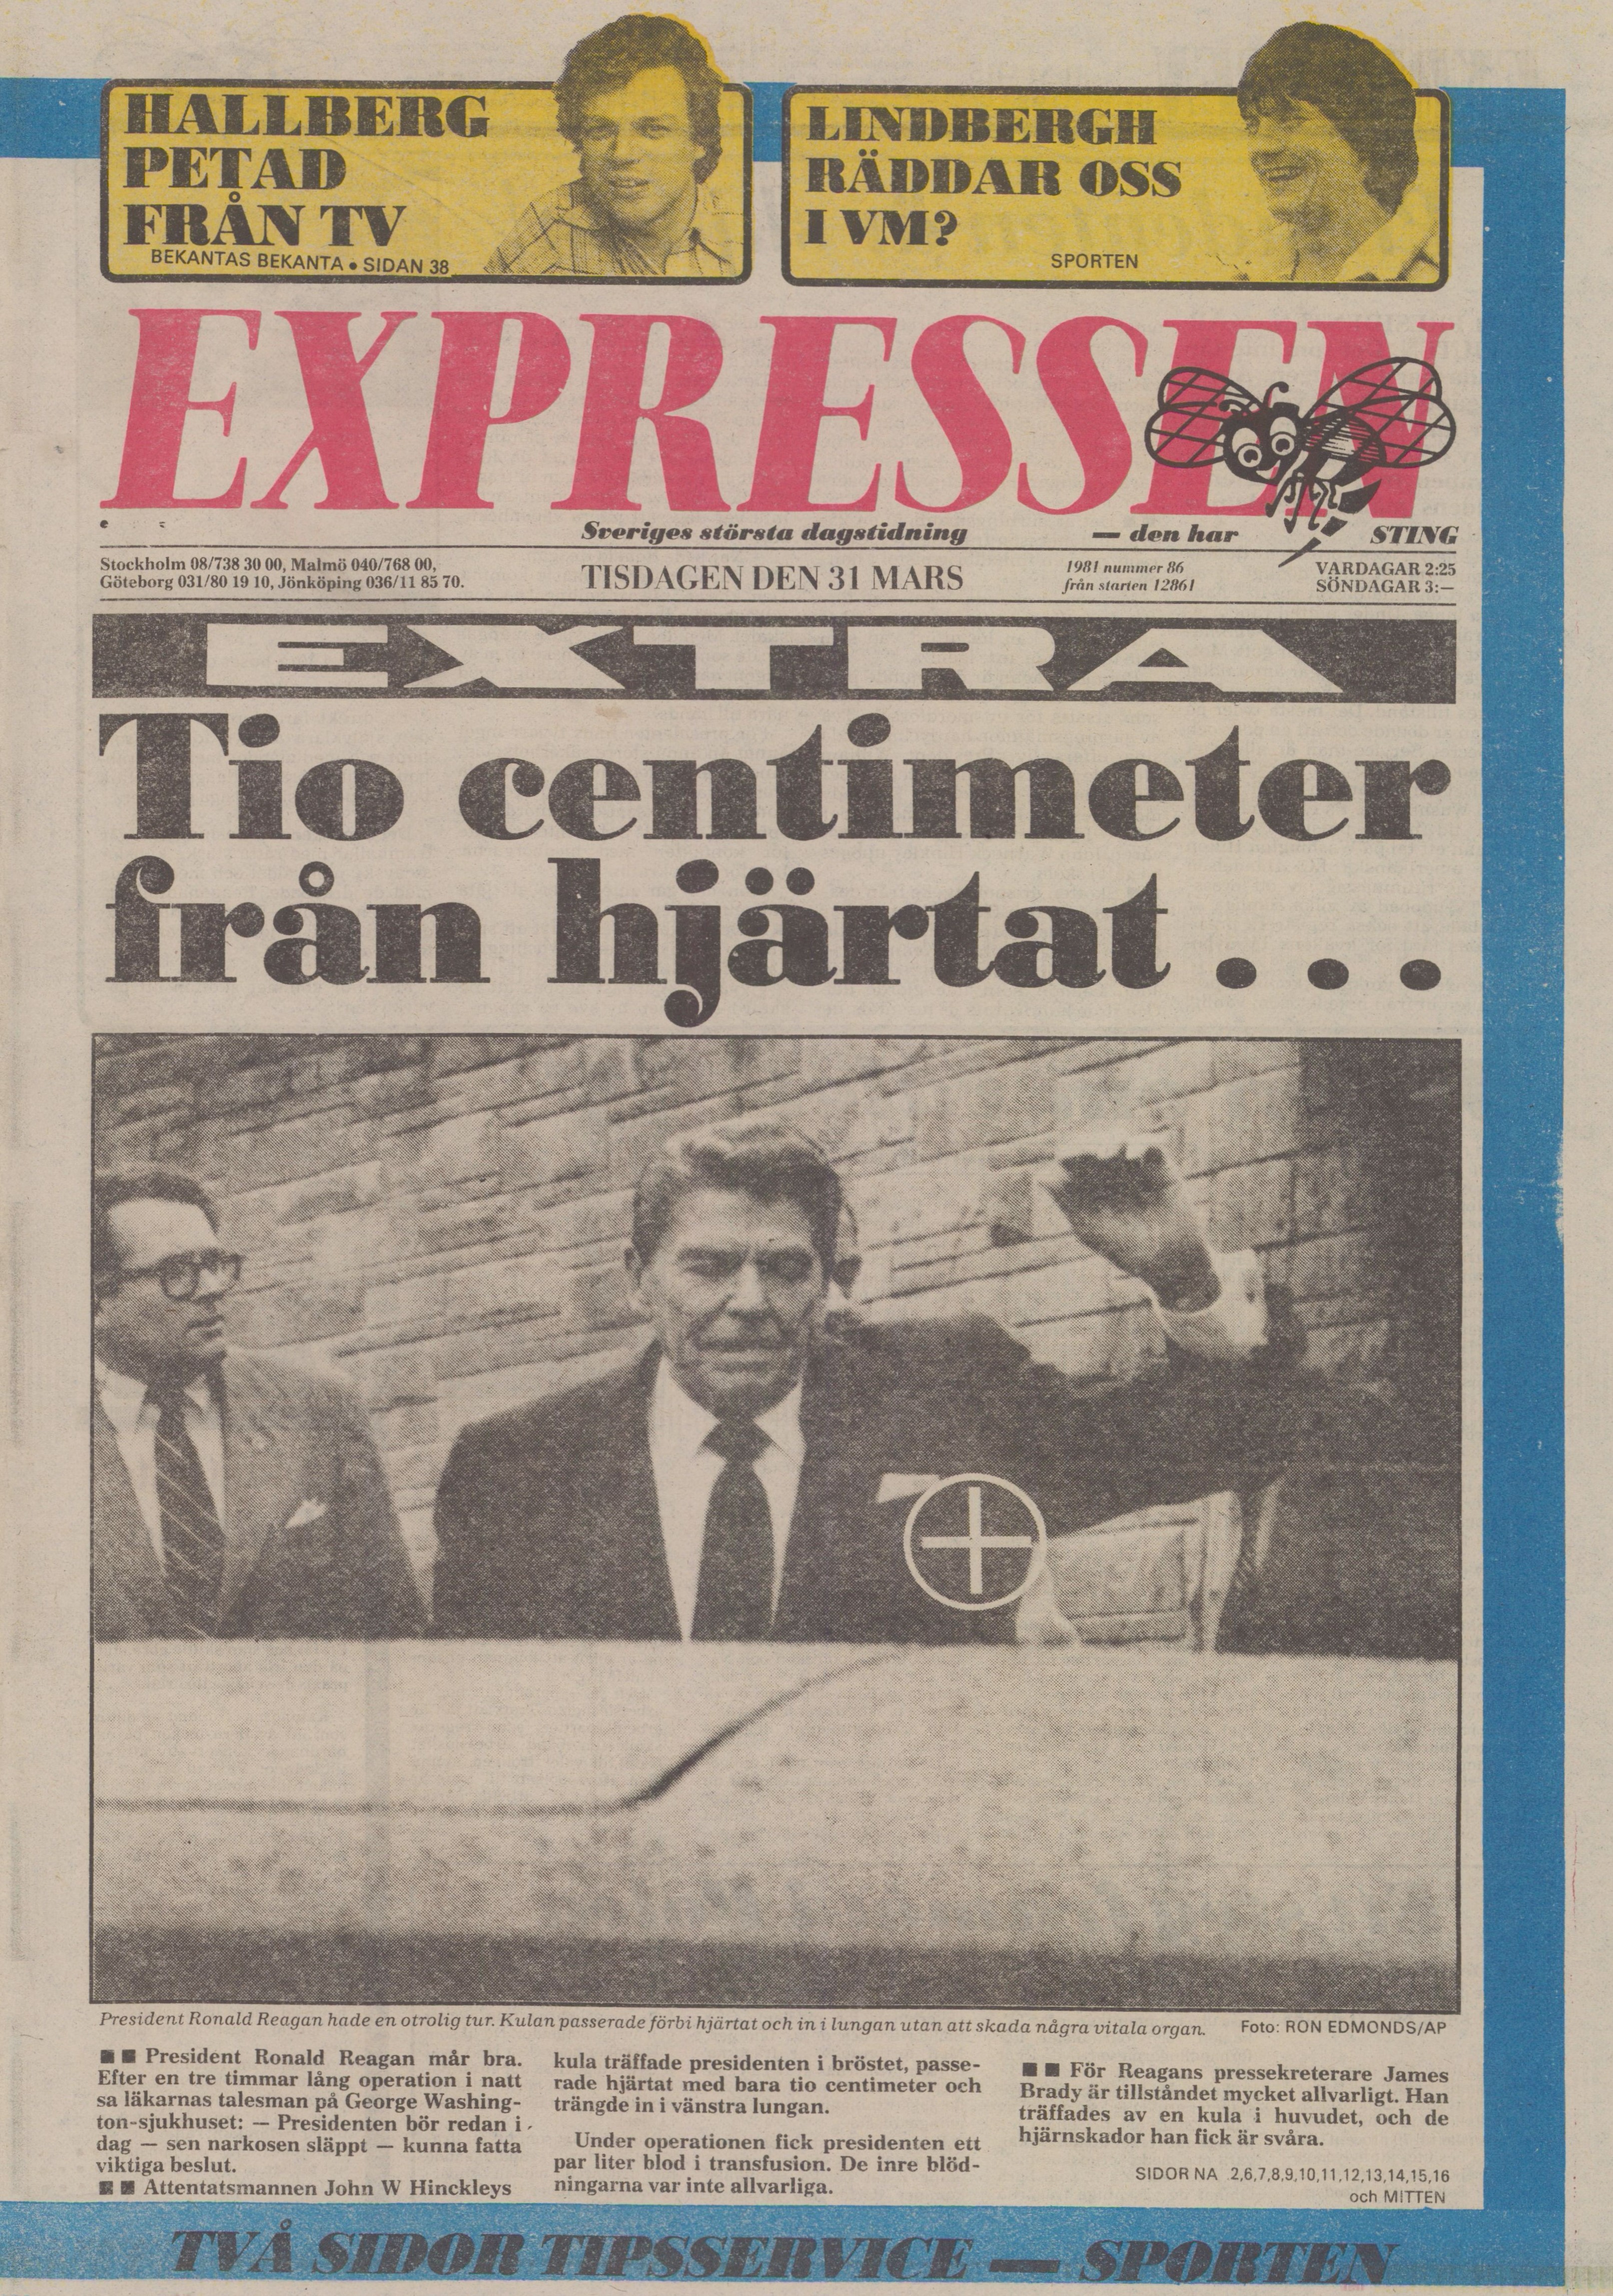 Tidningssida ur Expressen med bild på skjuten Ronald Reagan. Text: Tio centimeter från hjärtat.